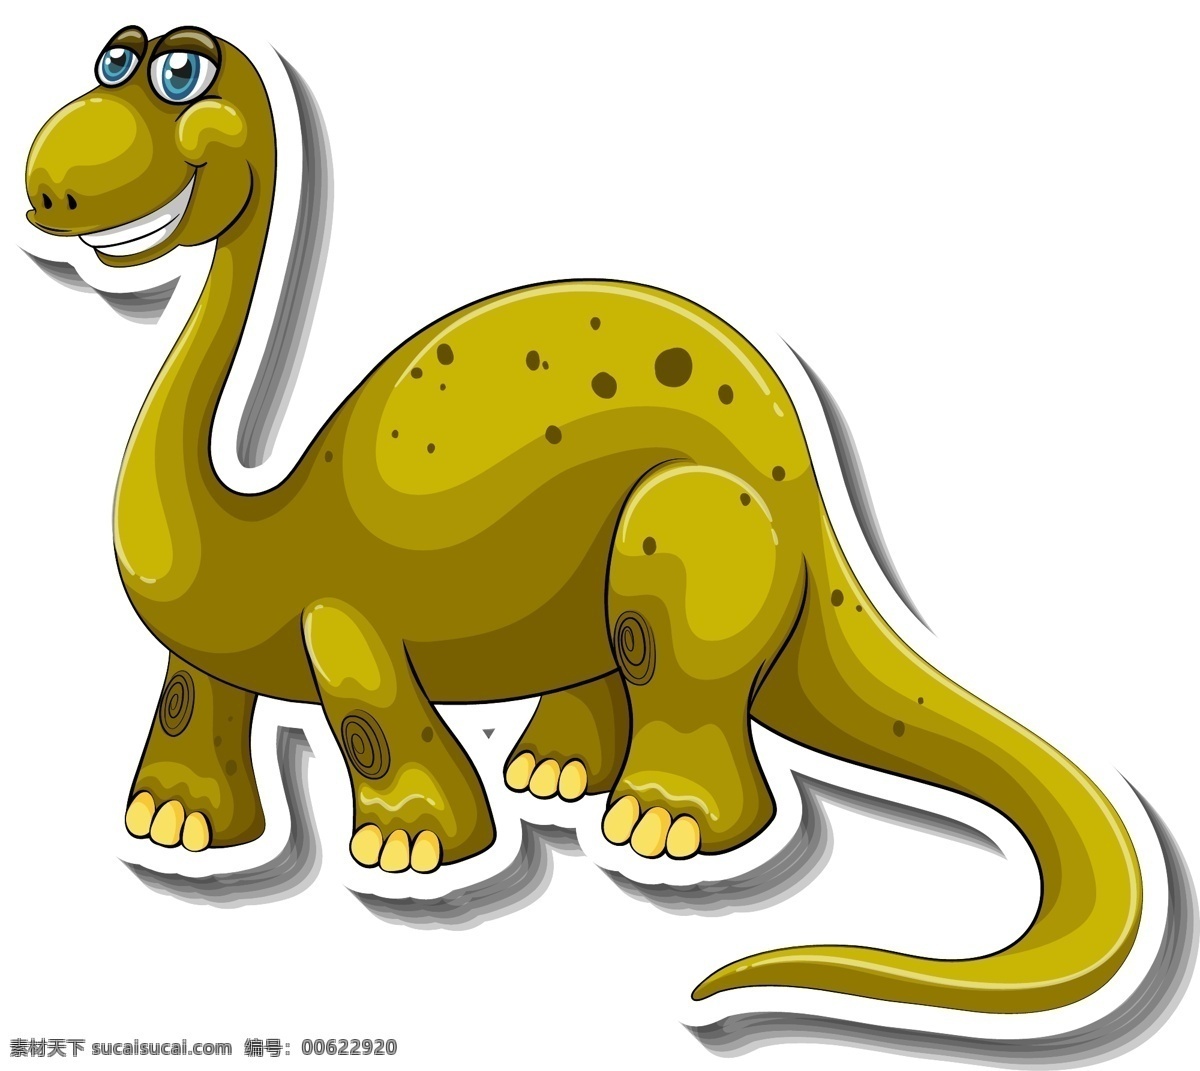 卡通恐龙 矢量恐龙 恐龙插图 恐龙插画 ai素材 卡通设计